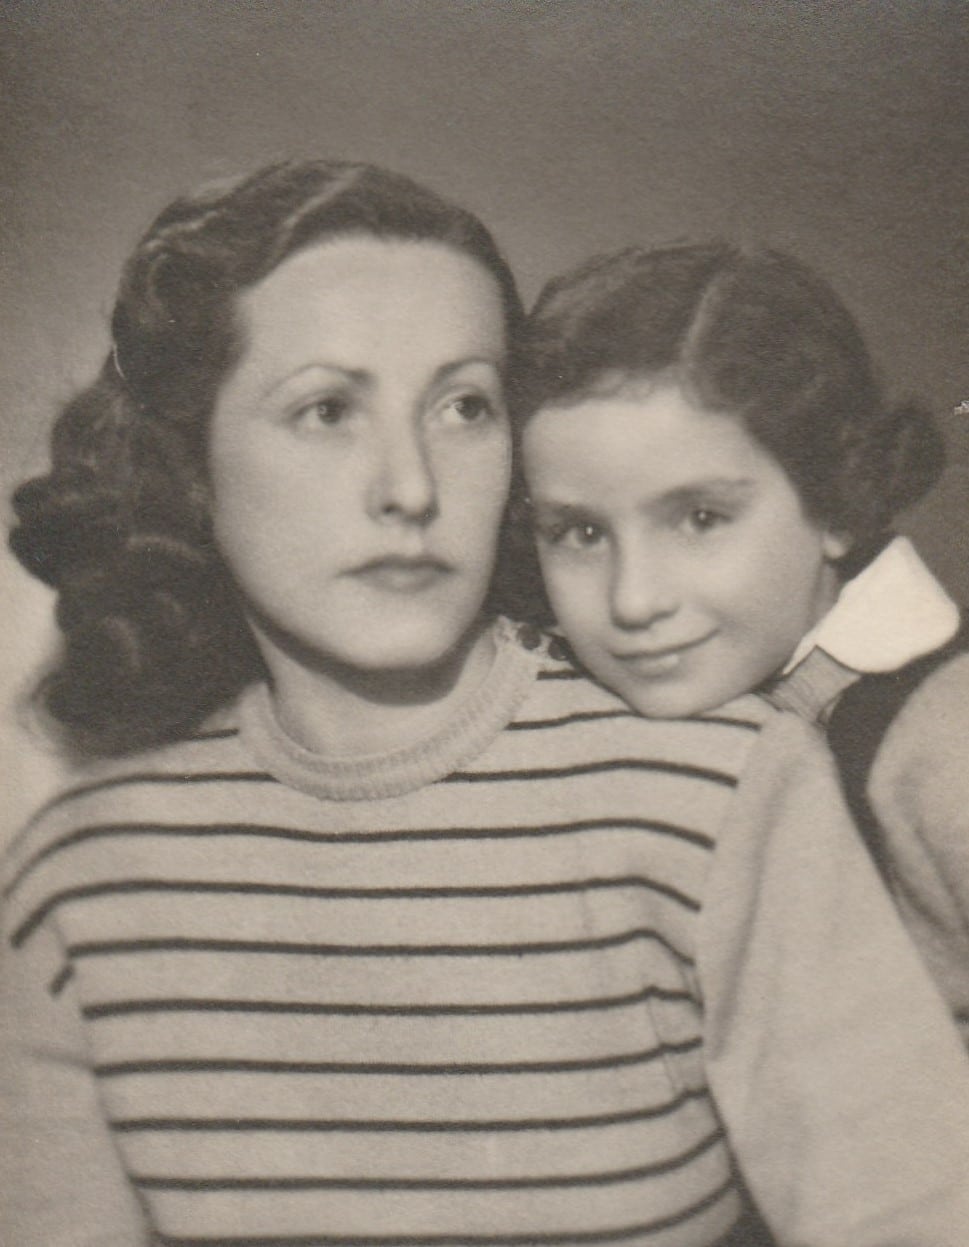 אדית ואליס אחרי המלחמה. התמונה שופרה ונצבעה באמצעות MyHeritage